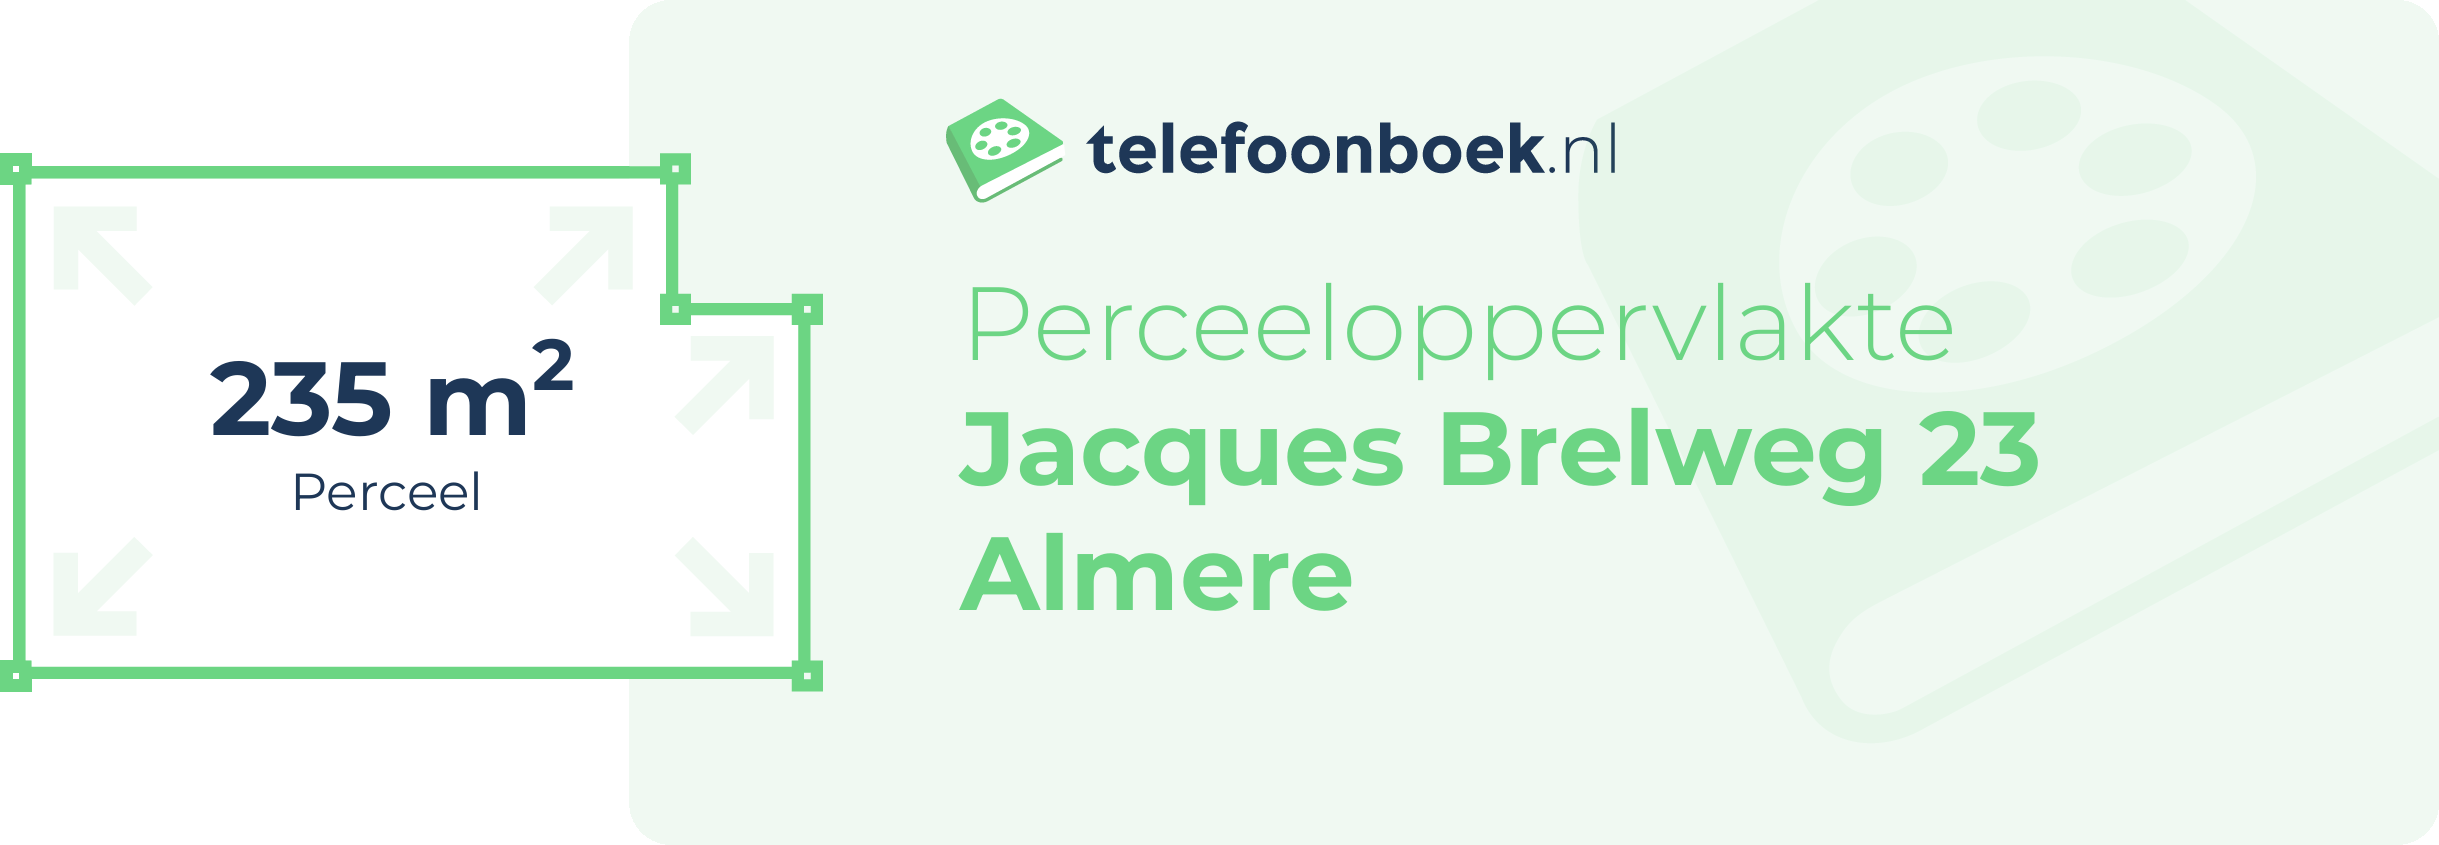 Perceeloppervlakte Jacques Brelweg 23 Almere